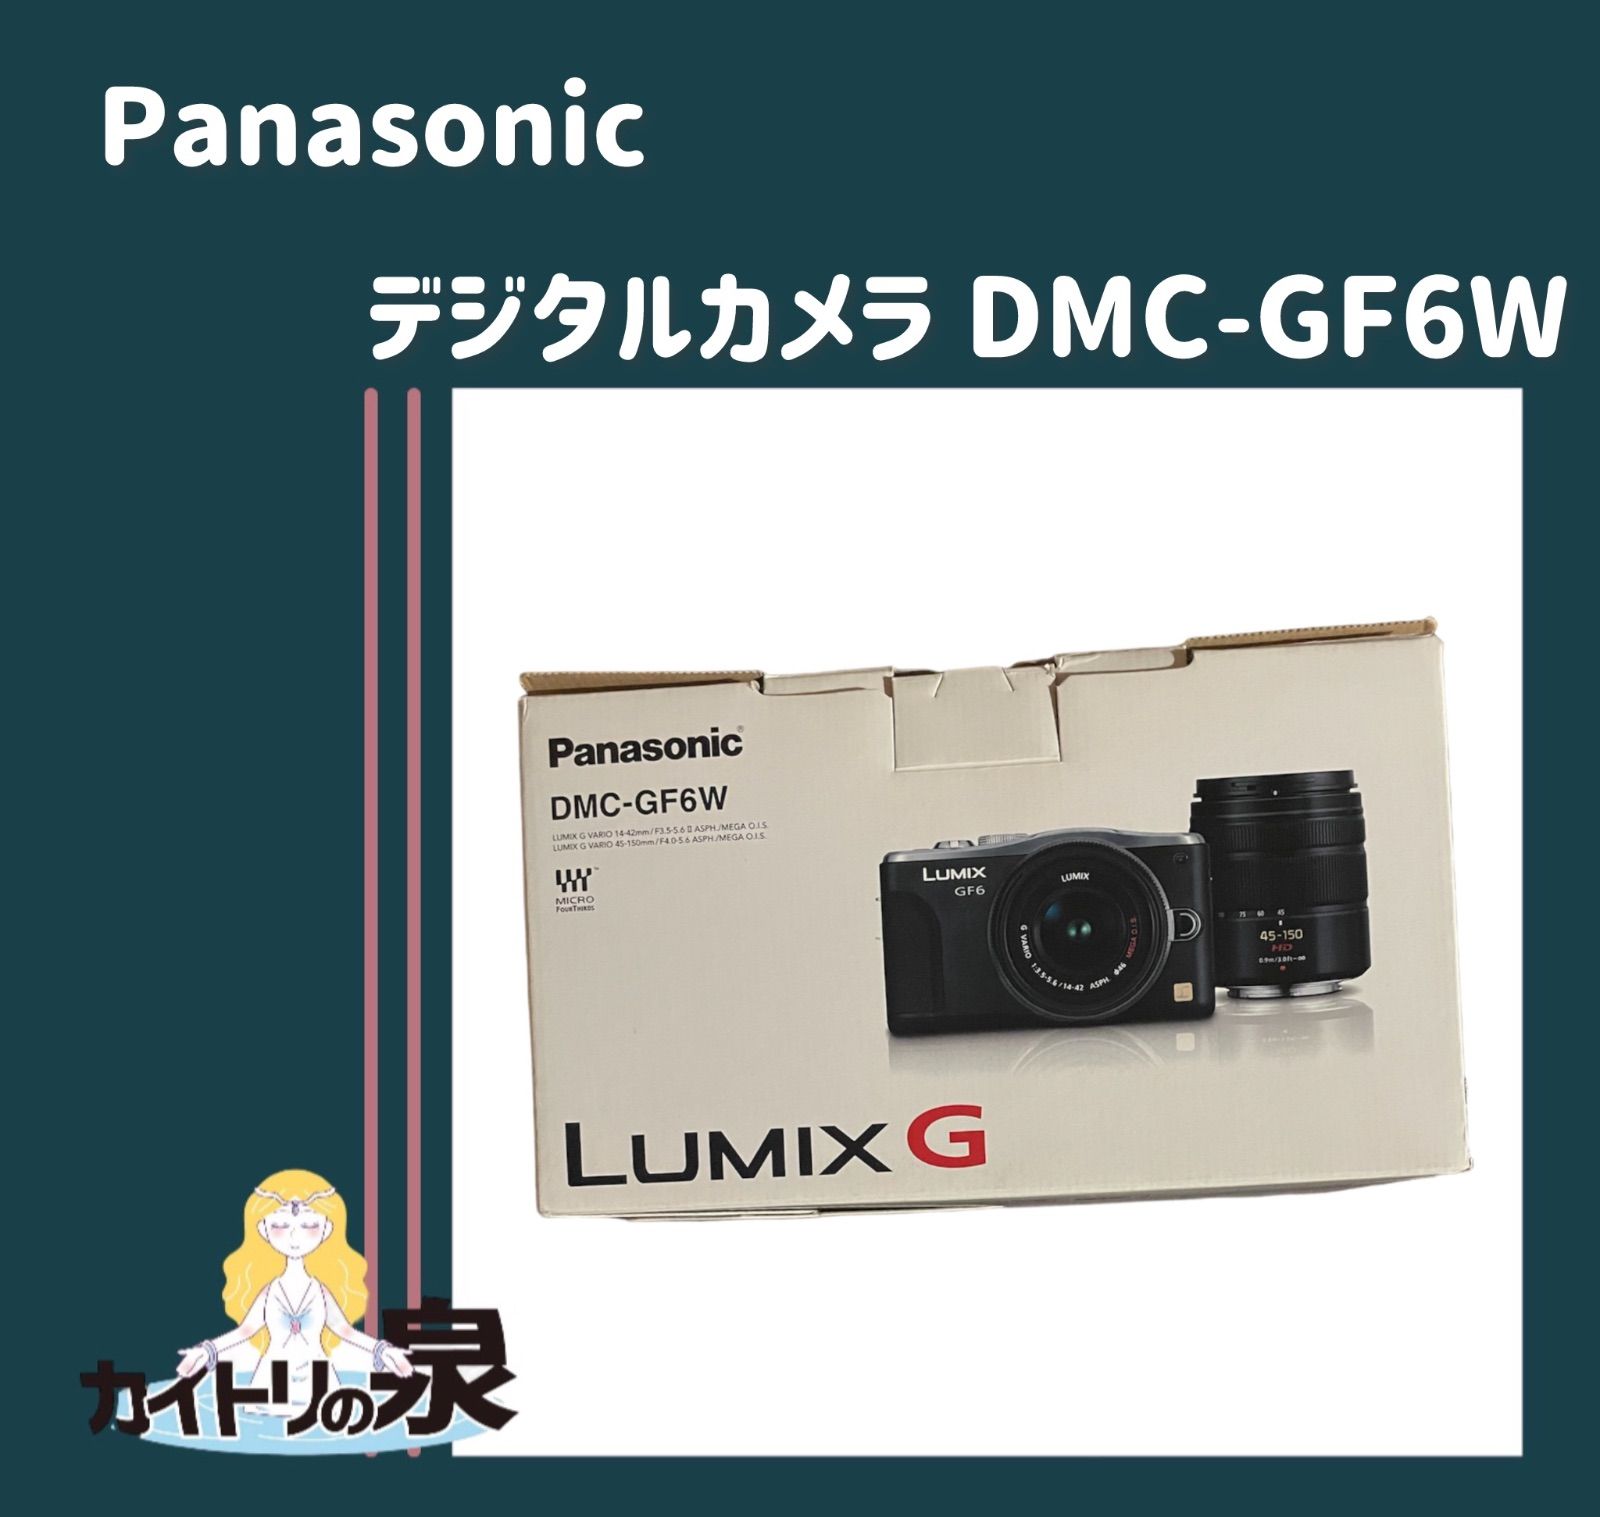 Panasonic パナソニックデジタルカメラ LUMIX G DMC-GF6W ダブルズーム ...